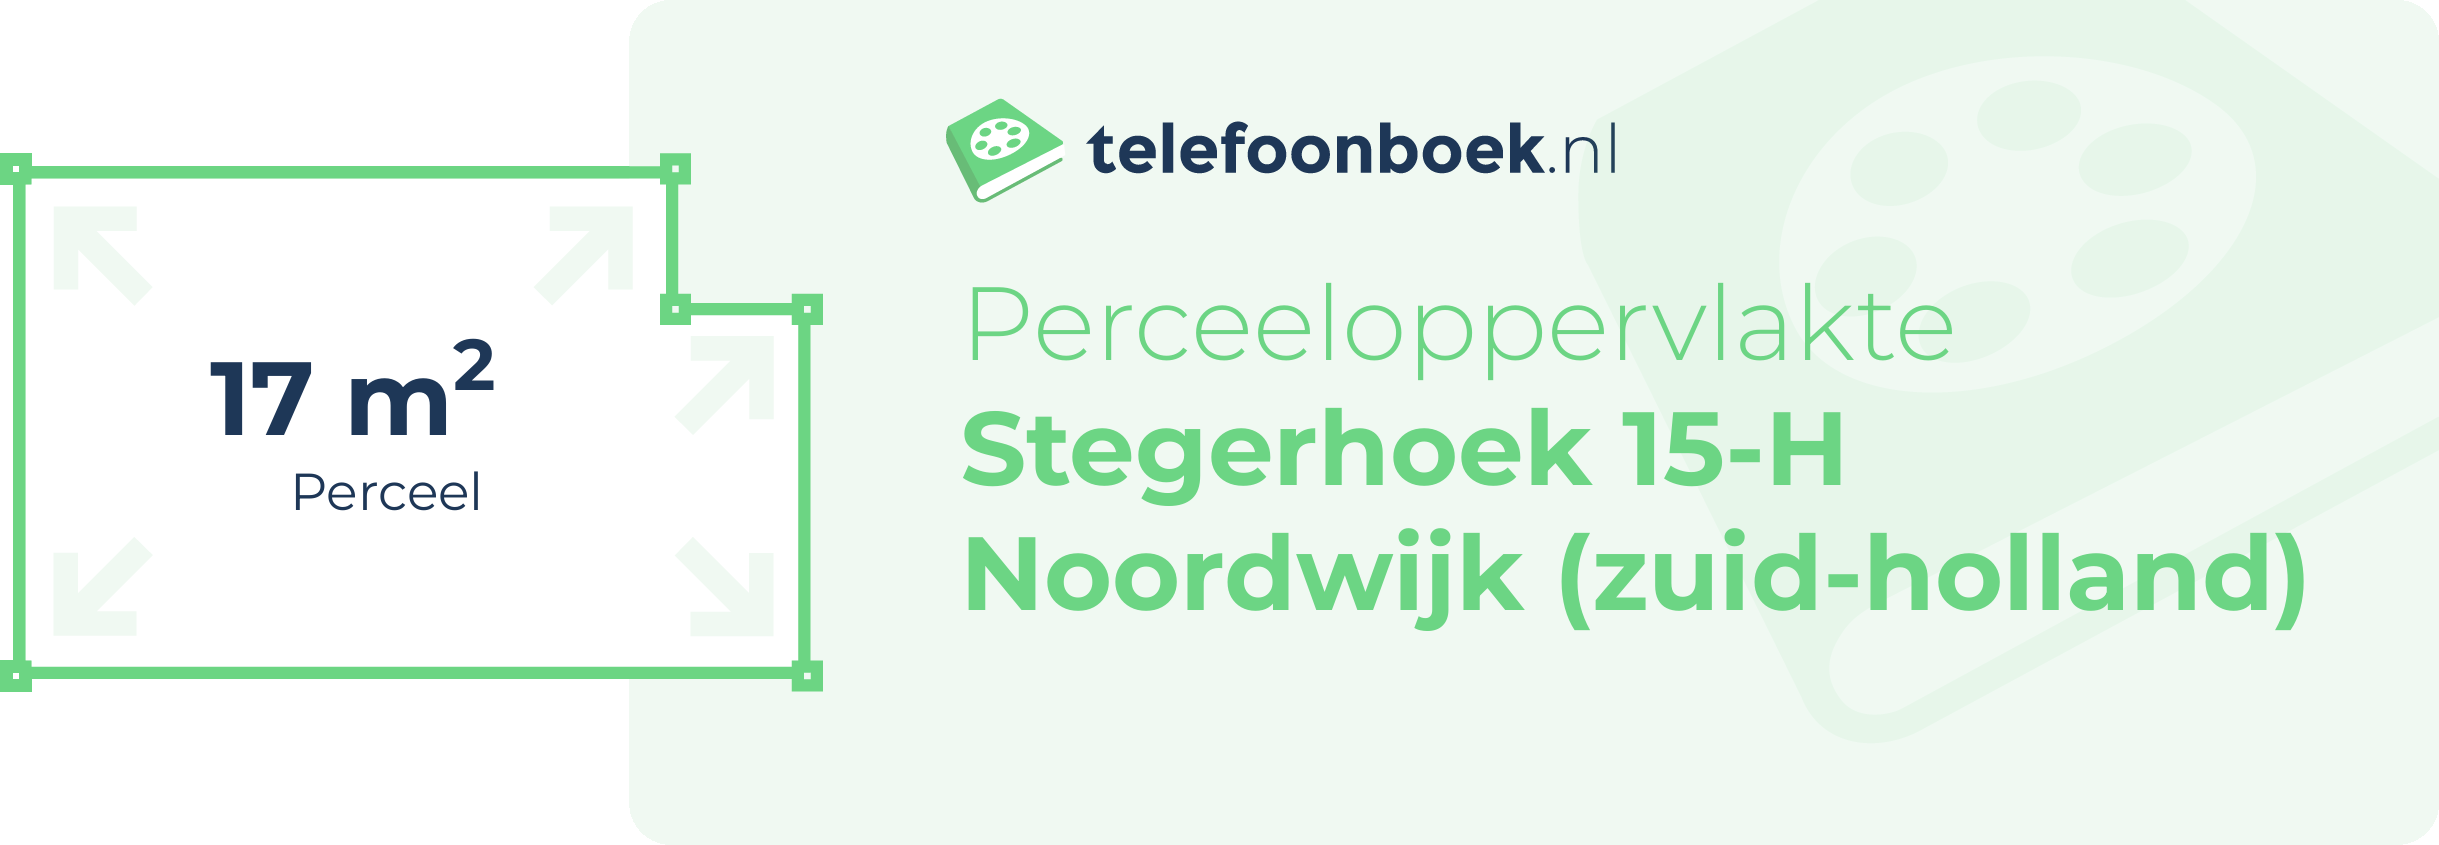 Perceeloppervlakte Stegerhoek 15-H Noordwijk (Zuid-Holland)